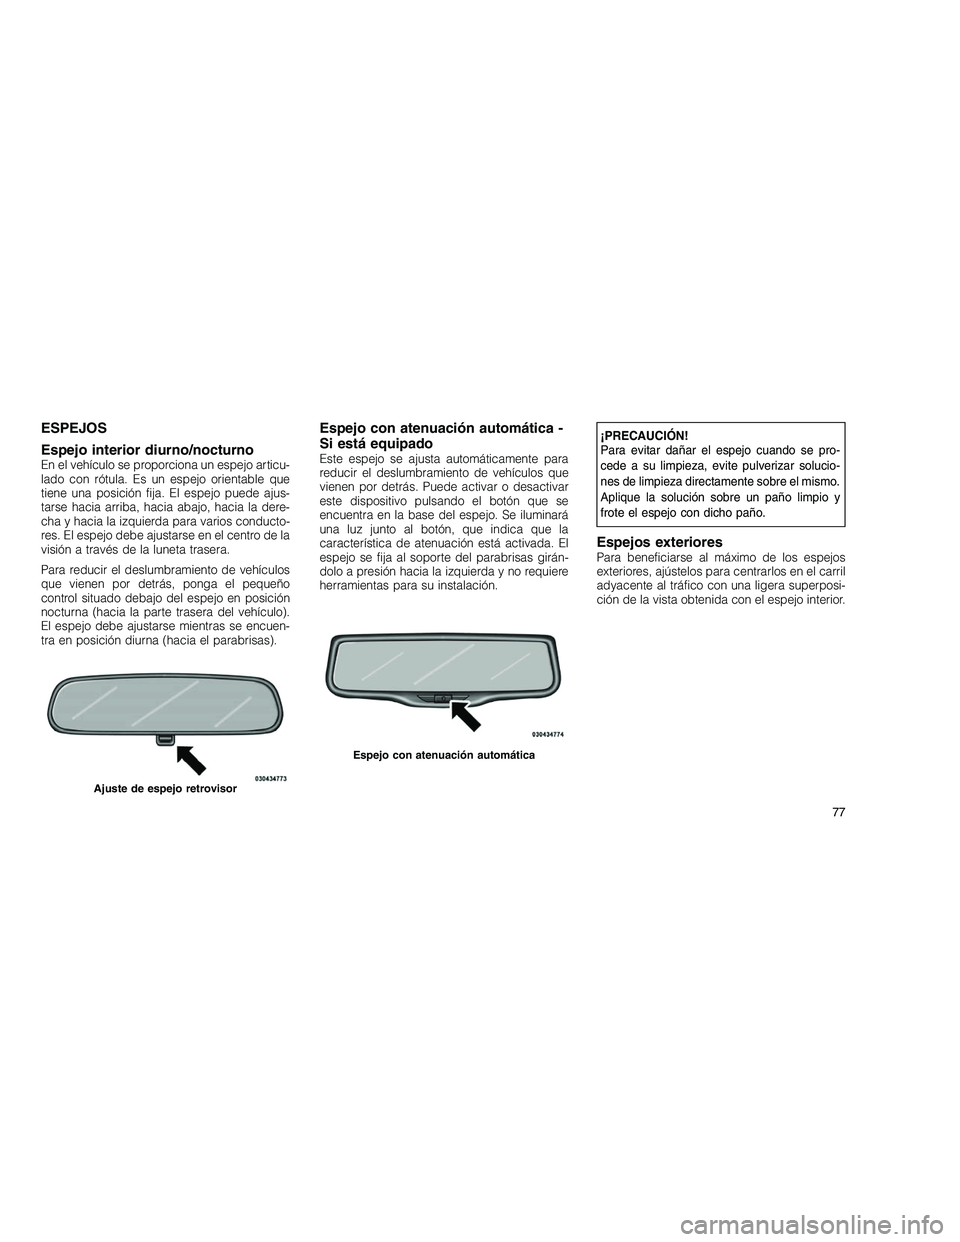 JEEP GRAND CHEROKEE 2011  Manual de Empleo y Cuidado (in Spanish) 
ESPEJOS
Espejo interior diurno/nocturno
En el vehículo se proporciona un espejo articu-
lado con rótula. Es un espejo orientable que
tiene una posición fija. El espejo puede ajus-
tarse hacia arri